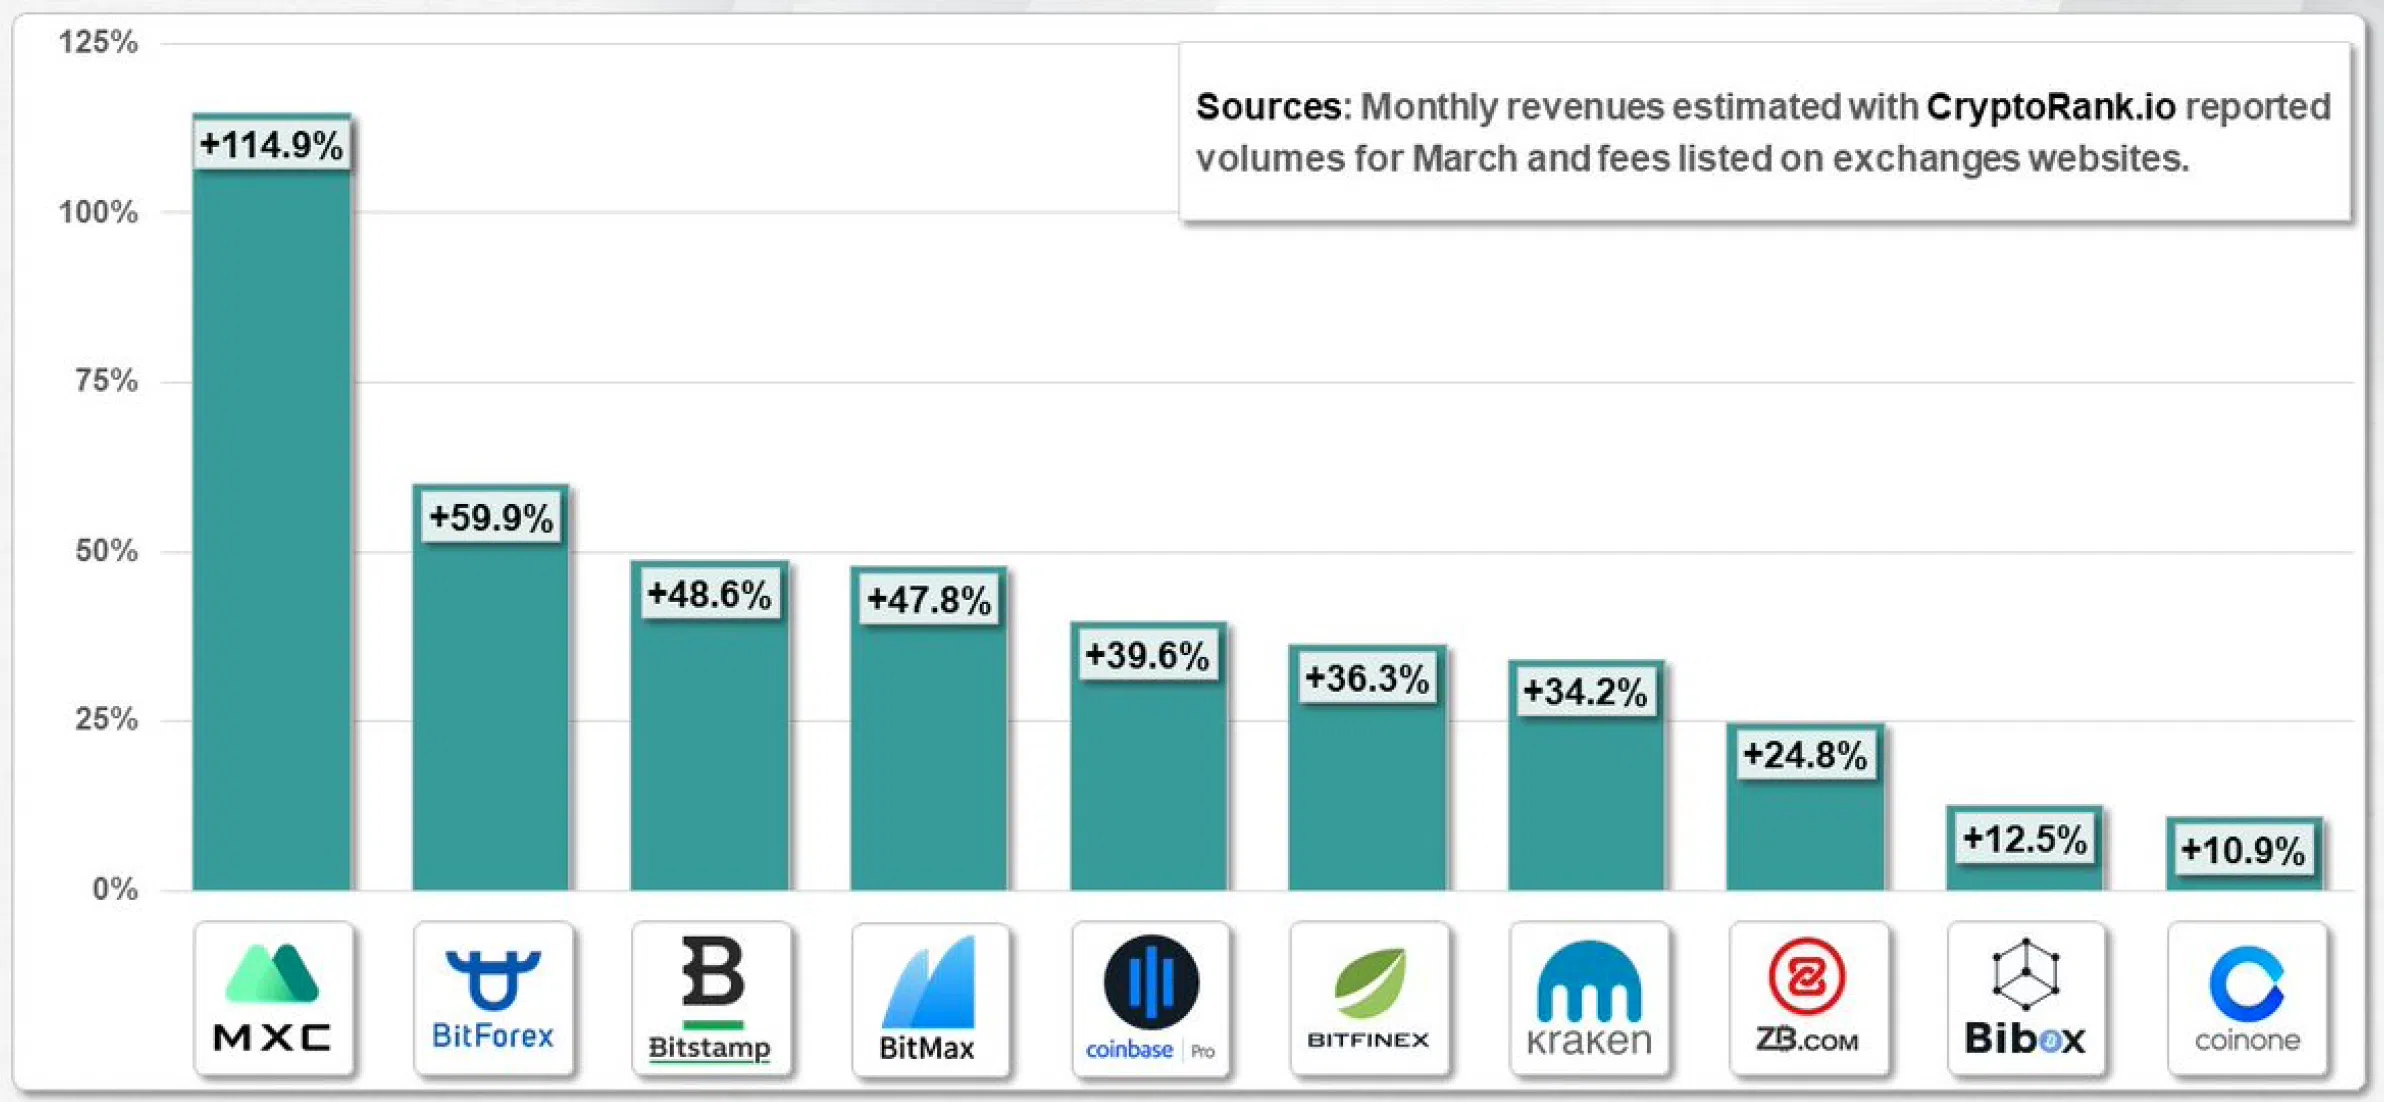 Bảng xếp hạng những sàn có doanh thu từ phí giao dịch cao nhất hồi tháng 3 được công bố trên CryptoRank.io